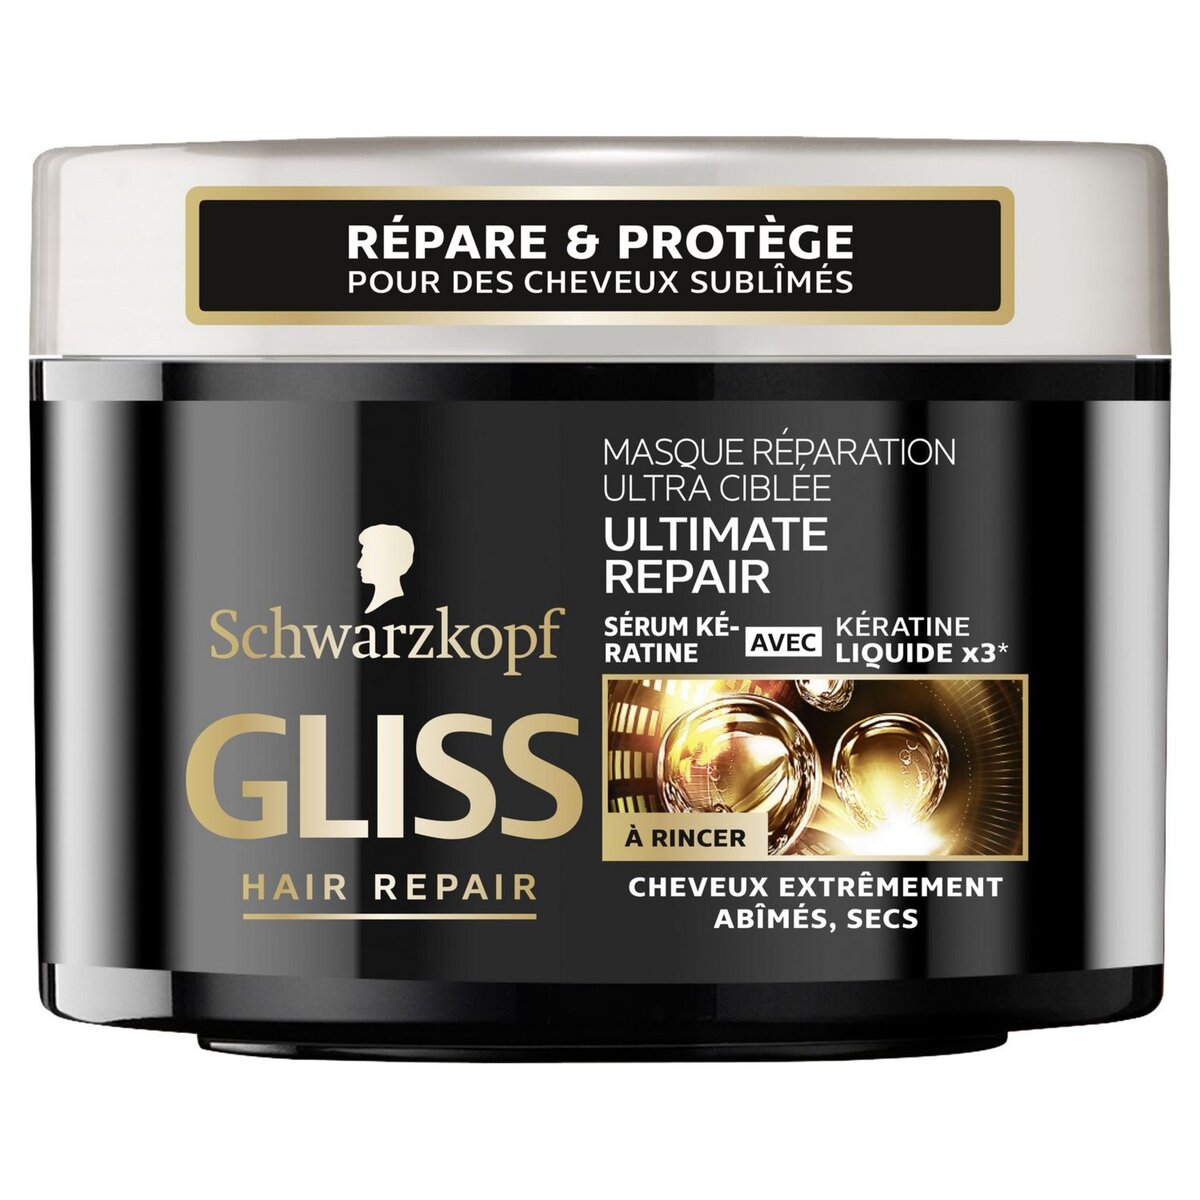 GLISS Masque réparation kératine cheveux extrêmement abîmés, secs 200ml